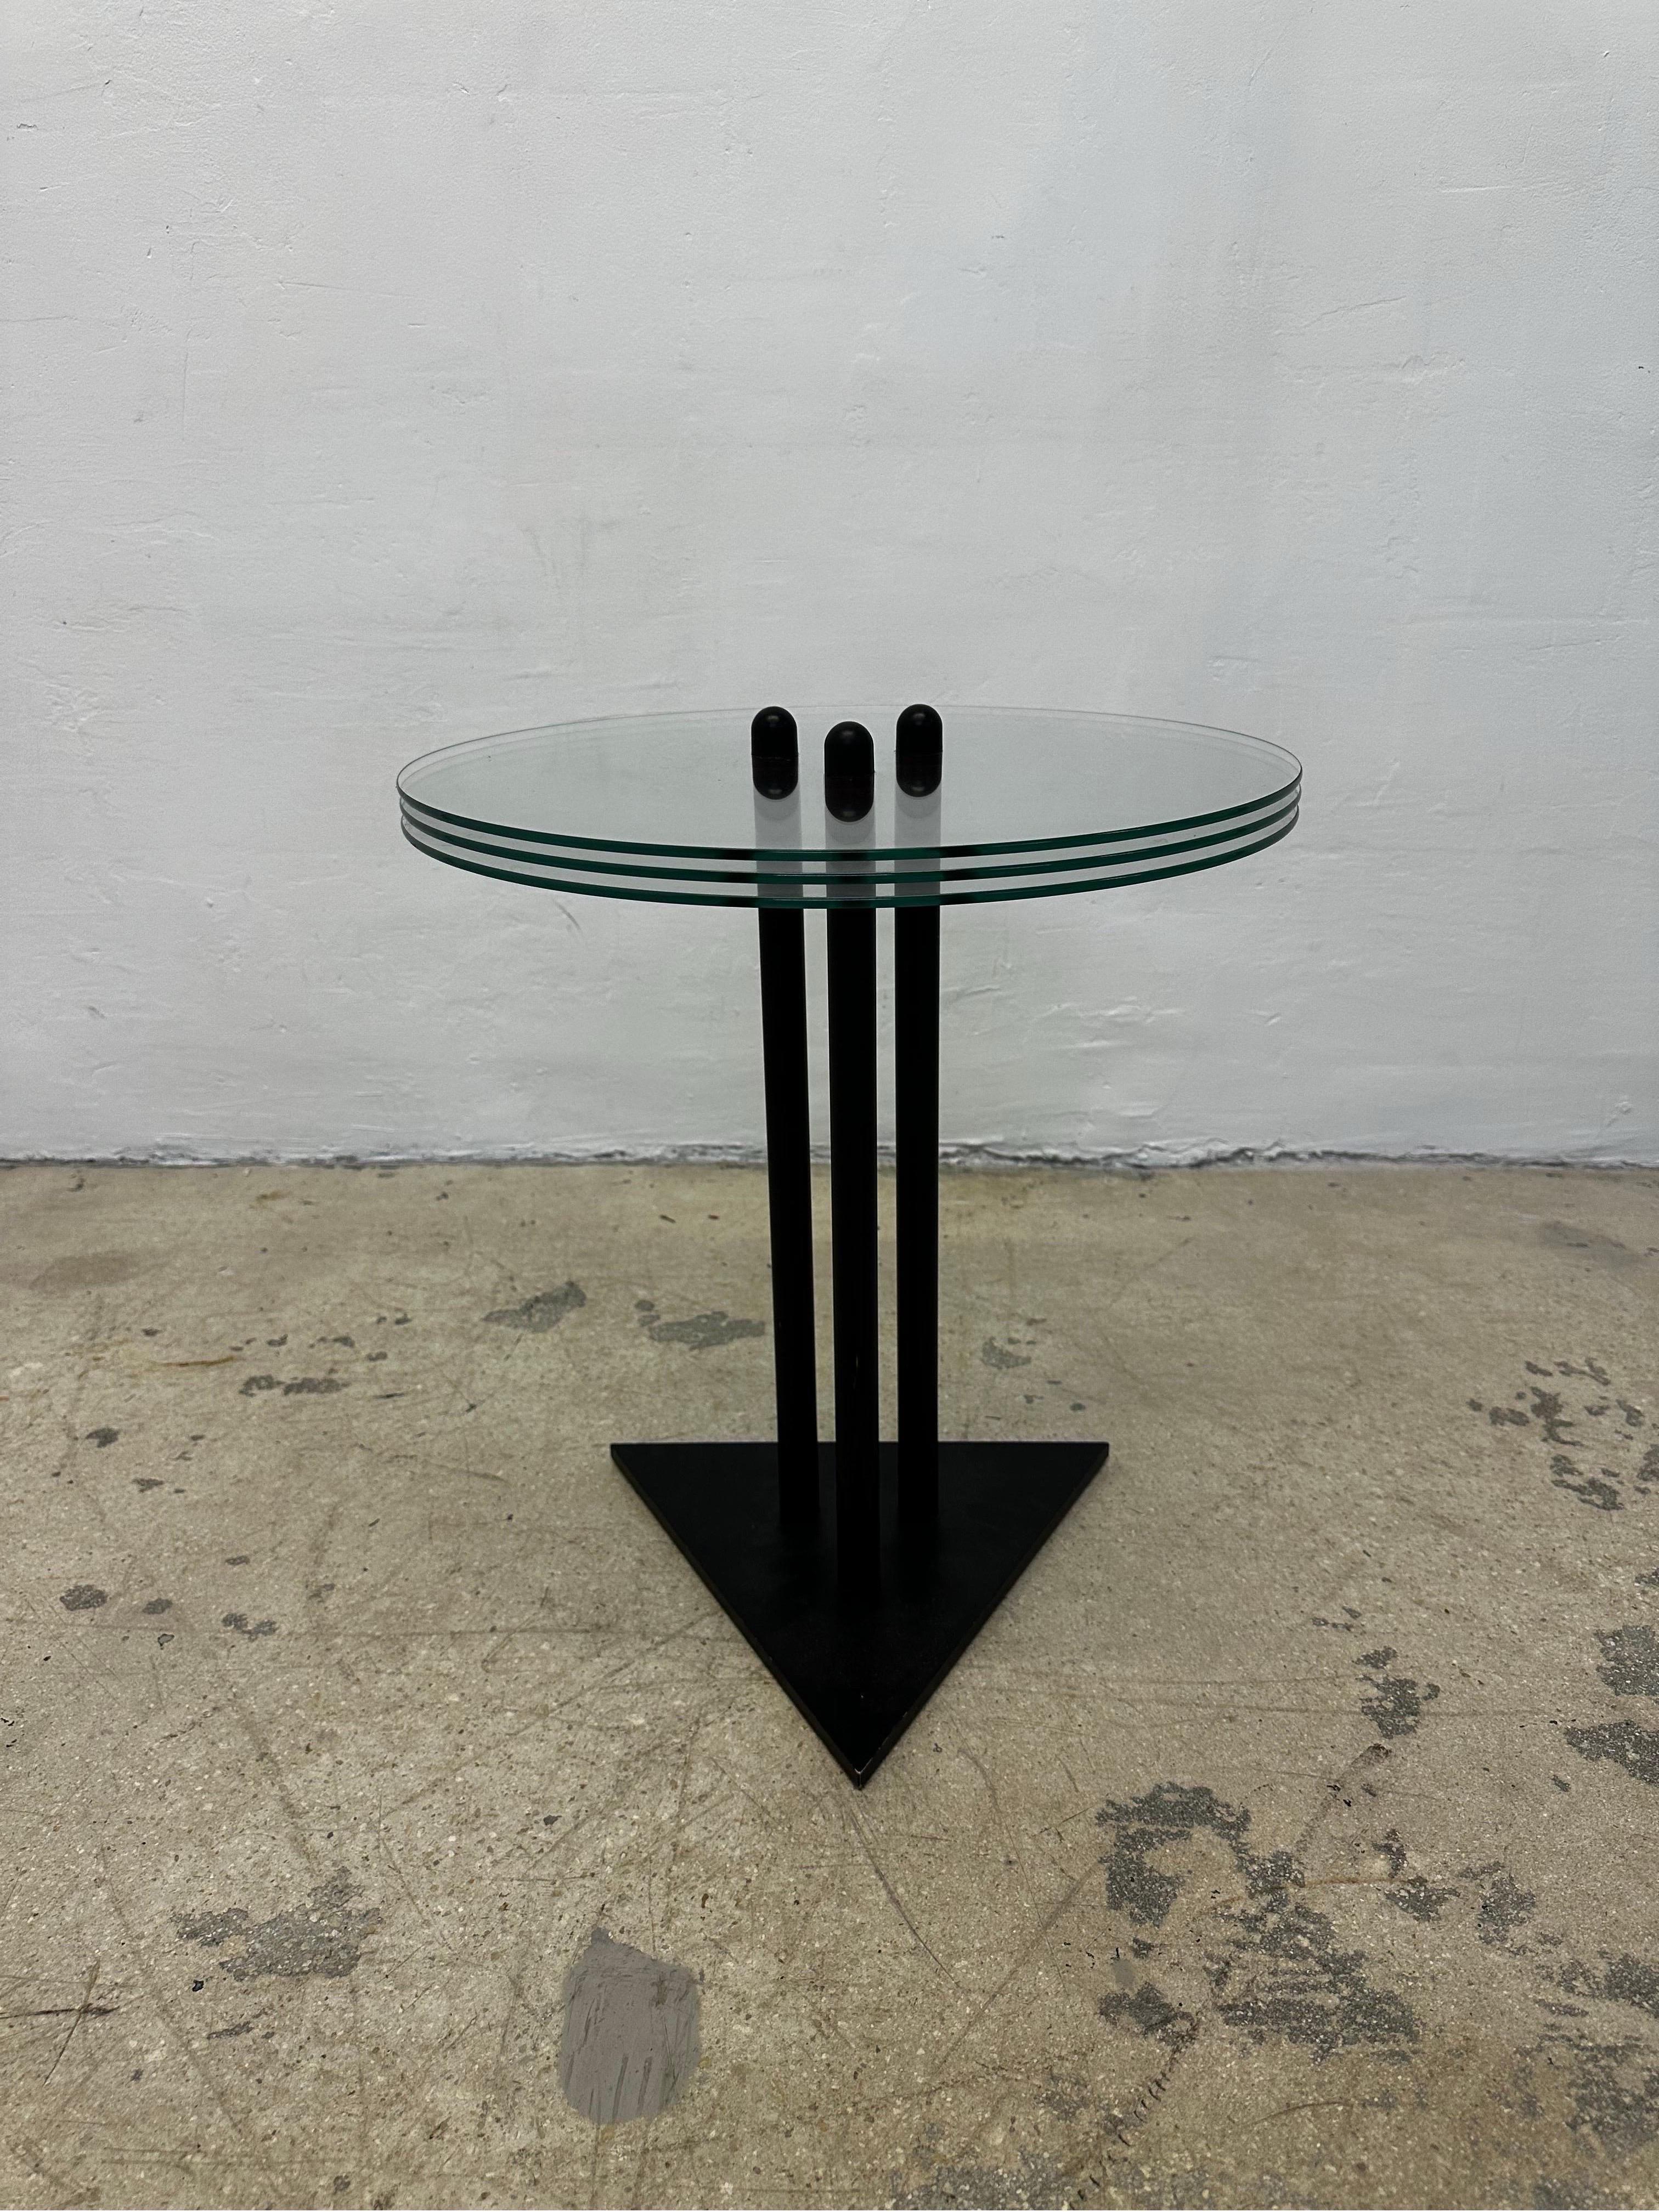 Table d'appoint ou de chevet postmoderne en acier laqué noir avec trois pièces de verre empilées, conçue et fabriquée par Becker Designs USA vers les années 1990.

Hauteur au sommet du verre 19-5/8